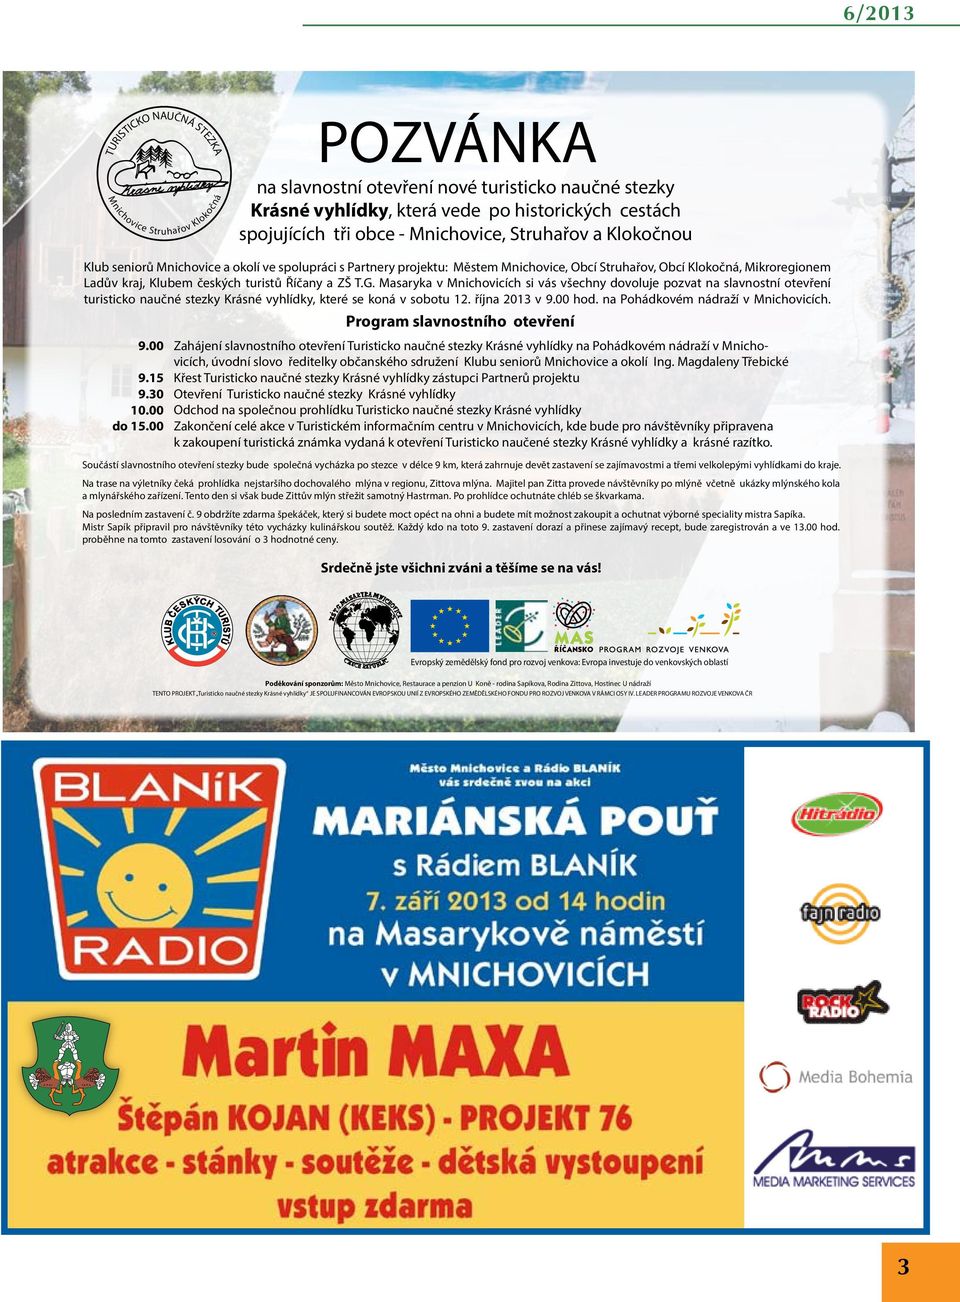 Říčany a ZŠ T.G. Masaryka v Mnichovicích si vás všechny dovoluje pozvat na slavnostní otevření turisticko naučné stezky Krásné vyhlídky, které se koná v sobotu 12. října 2013 v 9.00 hod.